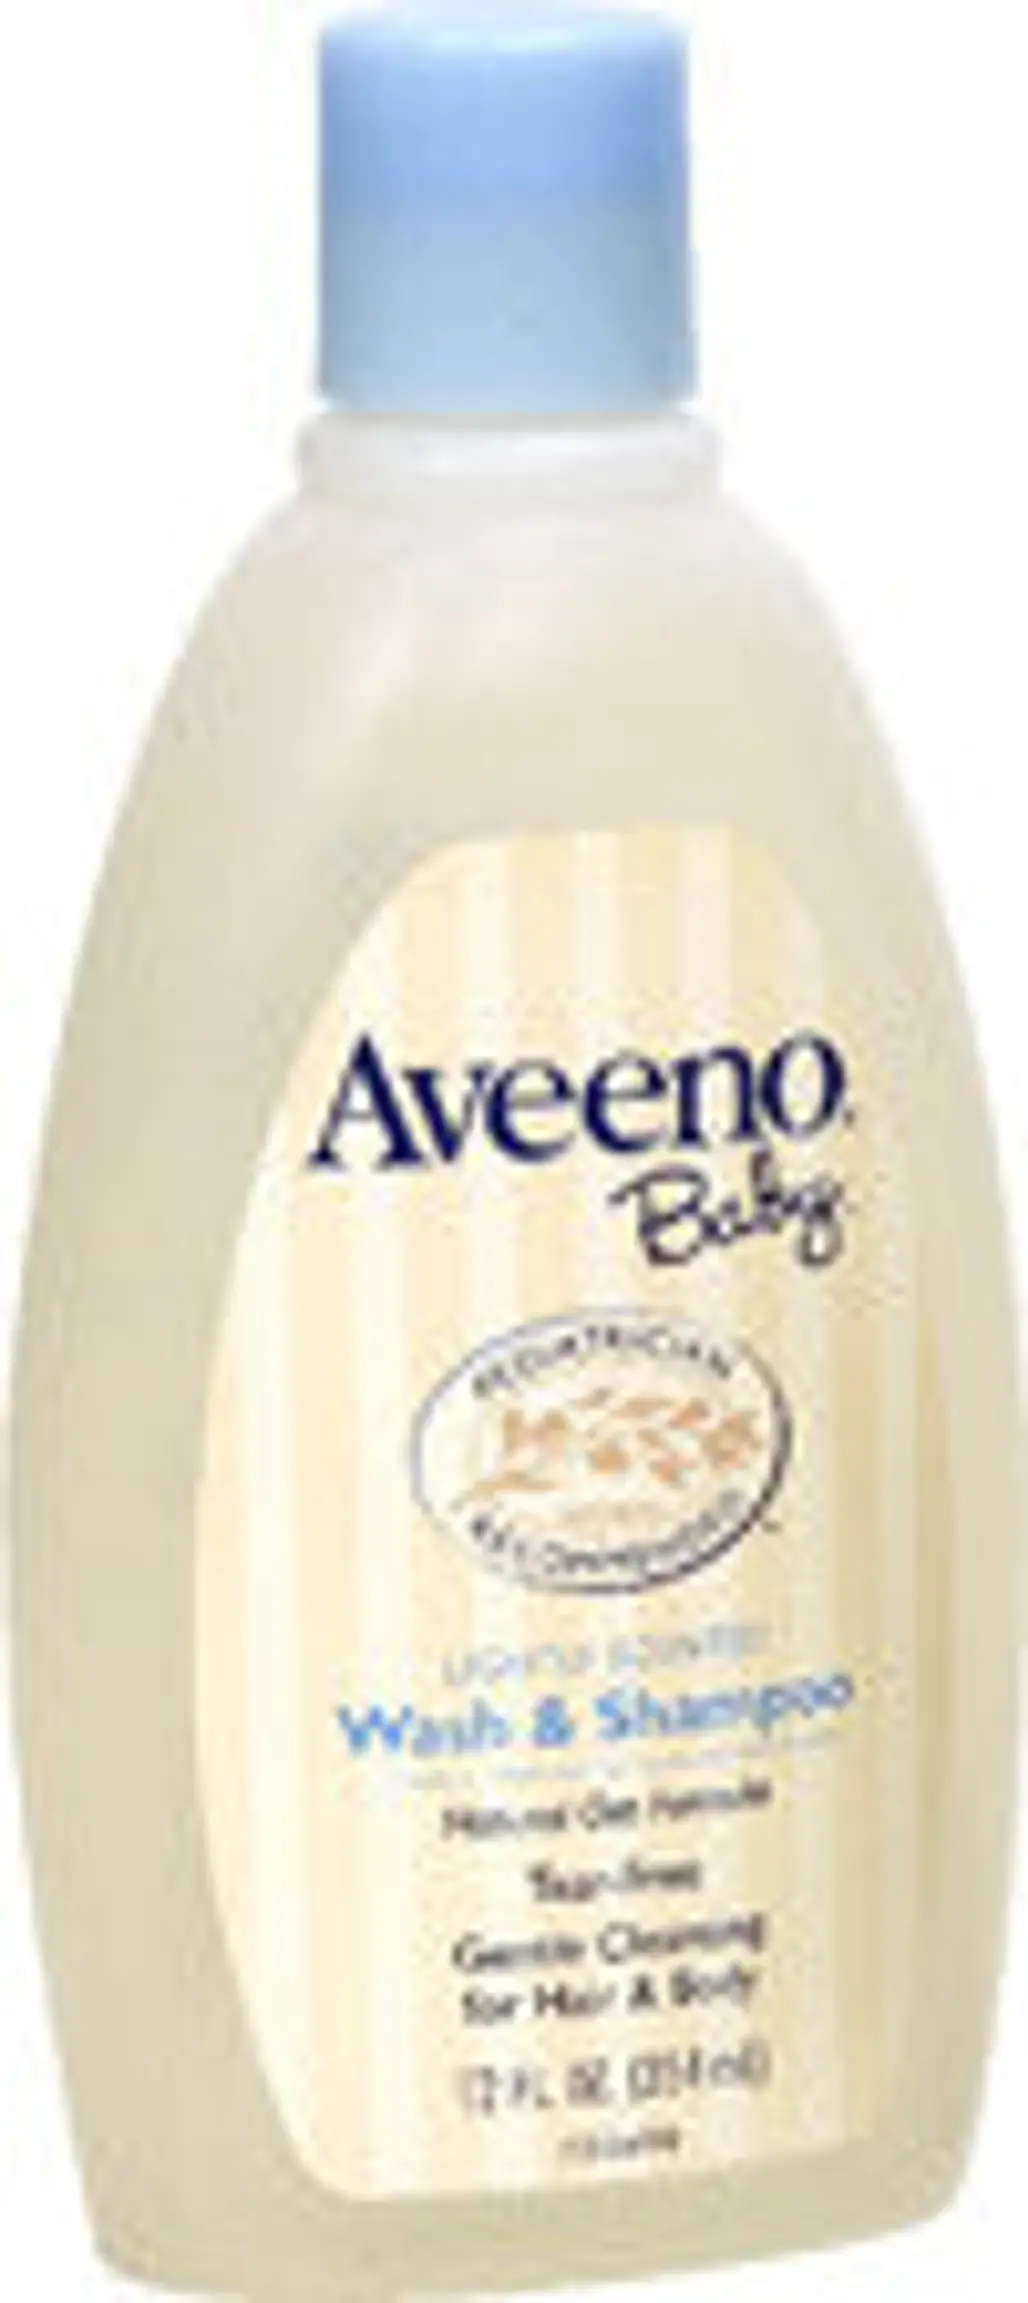 Aveeno Baby Wash and Shampoo